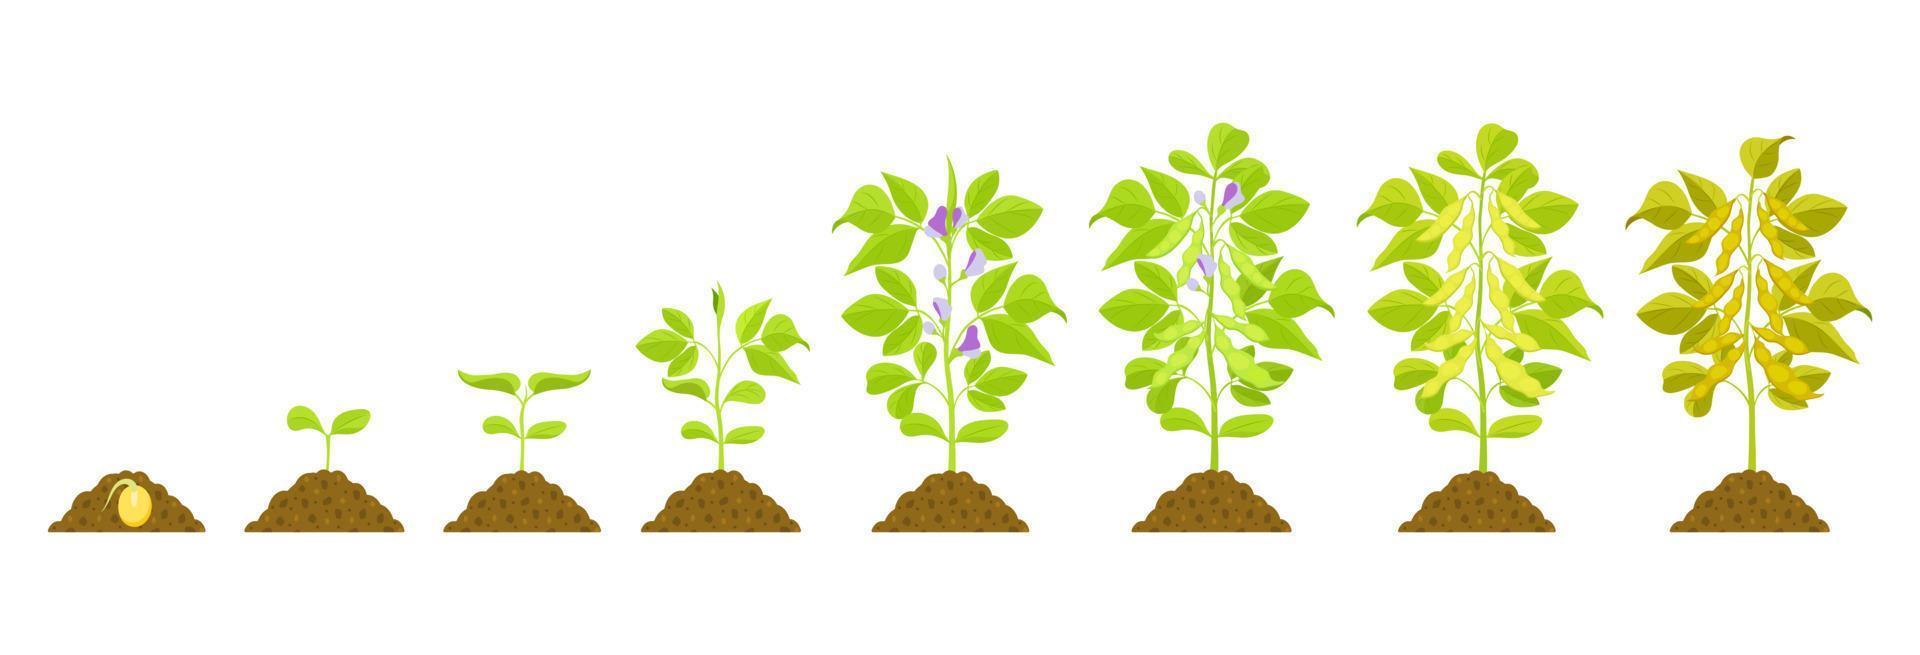 stades de croissance du soja. illustration botanique vectorielle des phases de germination et de maturation des légumineuses. vecteur